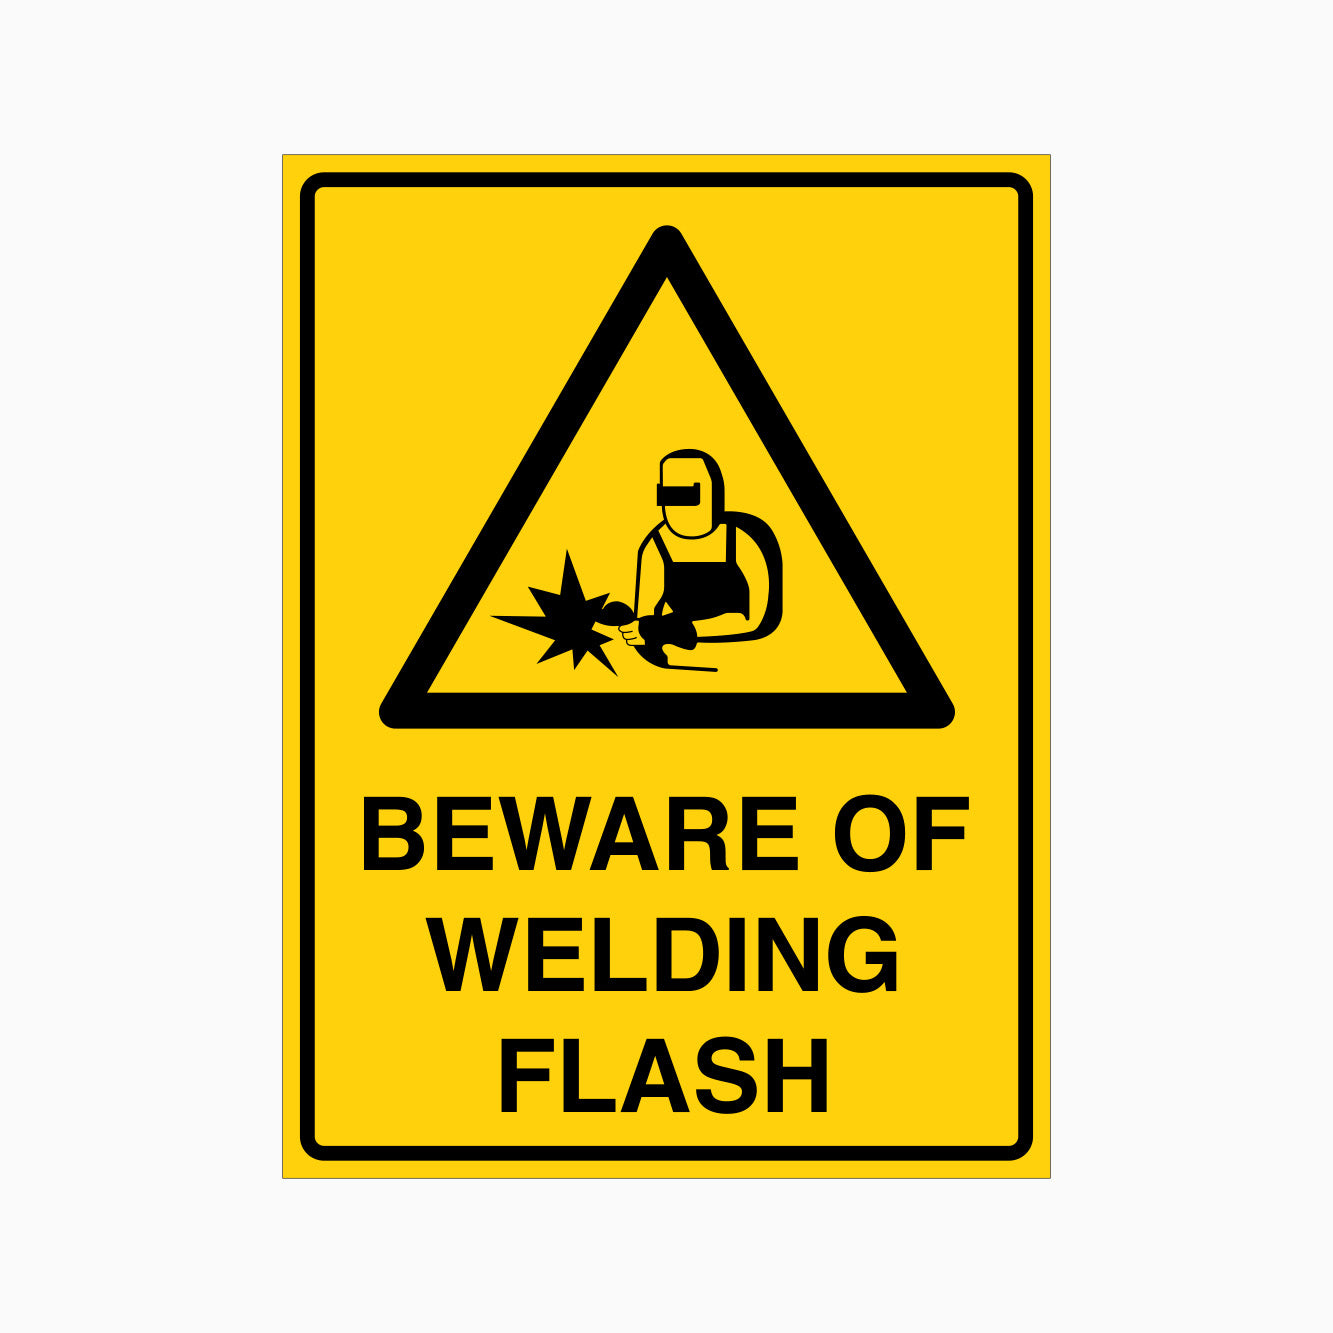 BEWARE OF WELDING FLASH SIGN